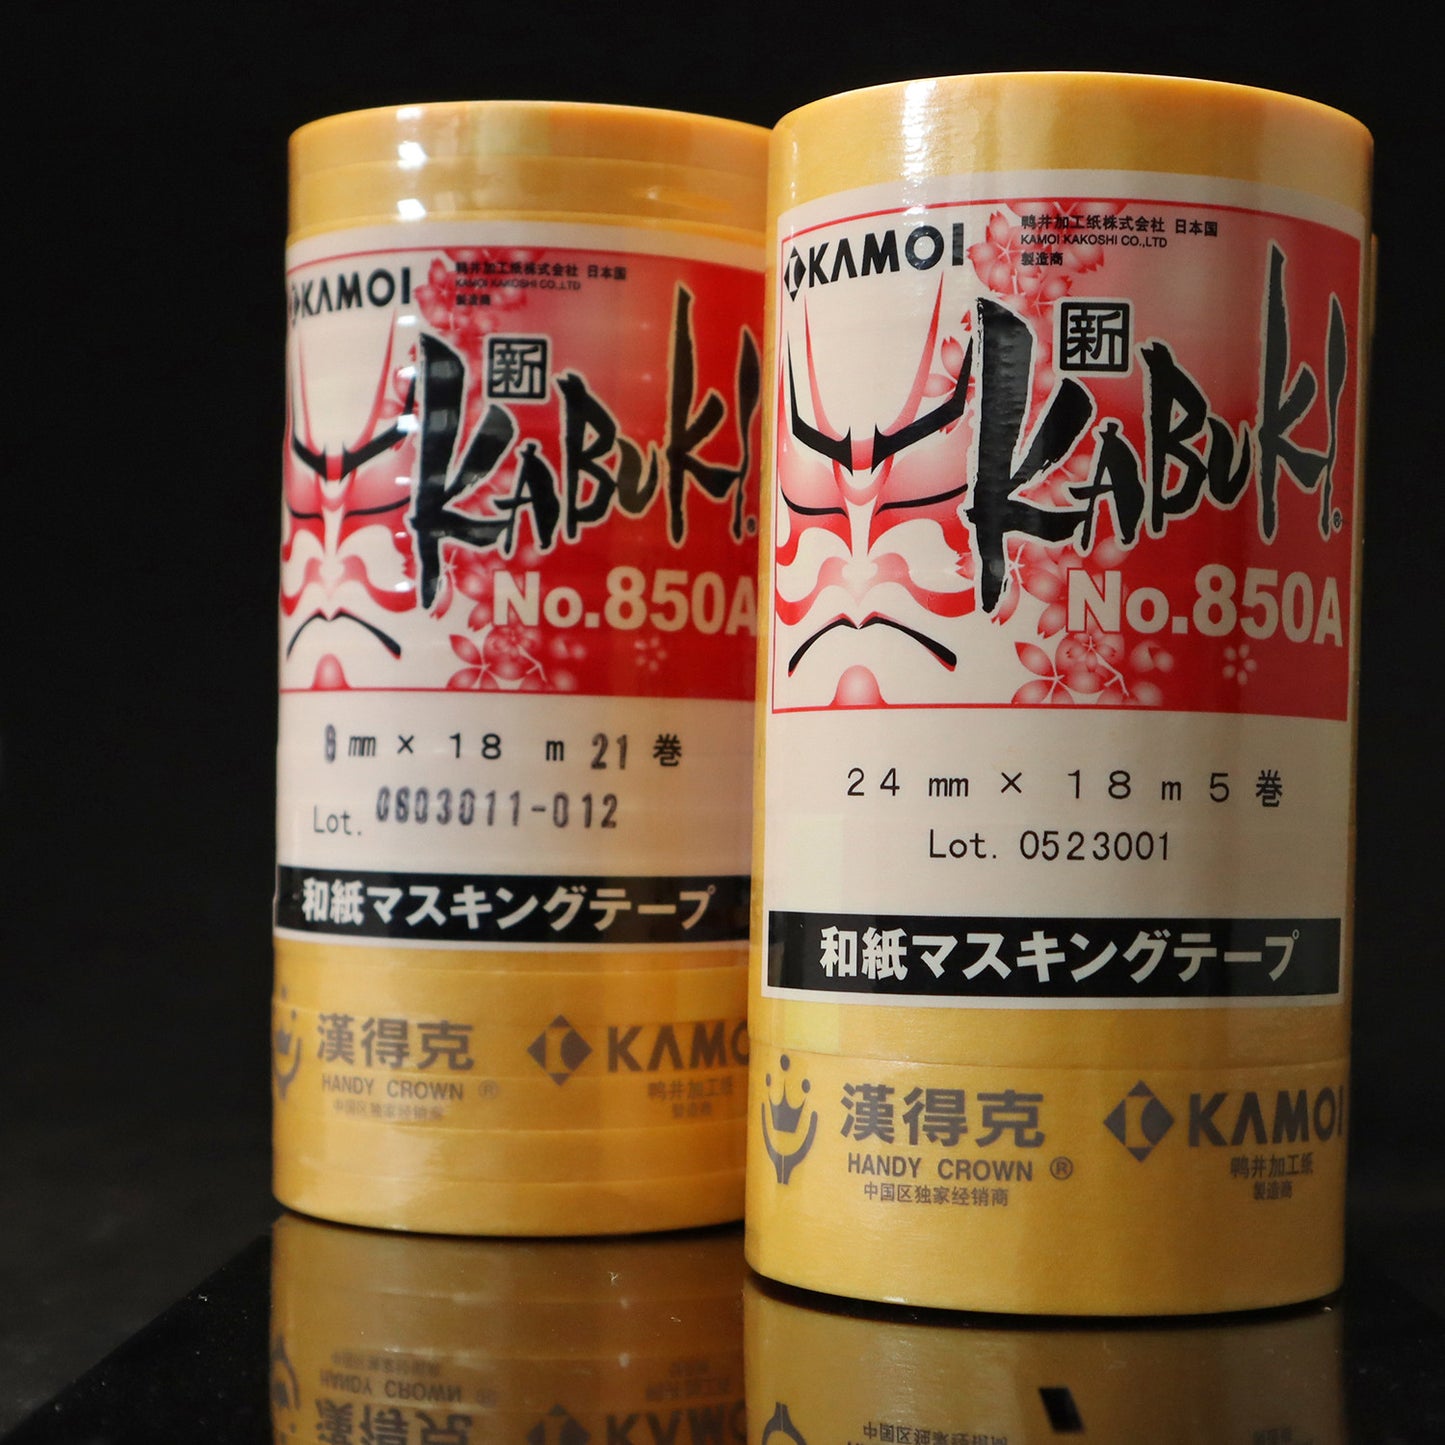 KAMOI Kabuki Masking tape (For automotive and scale model use)